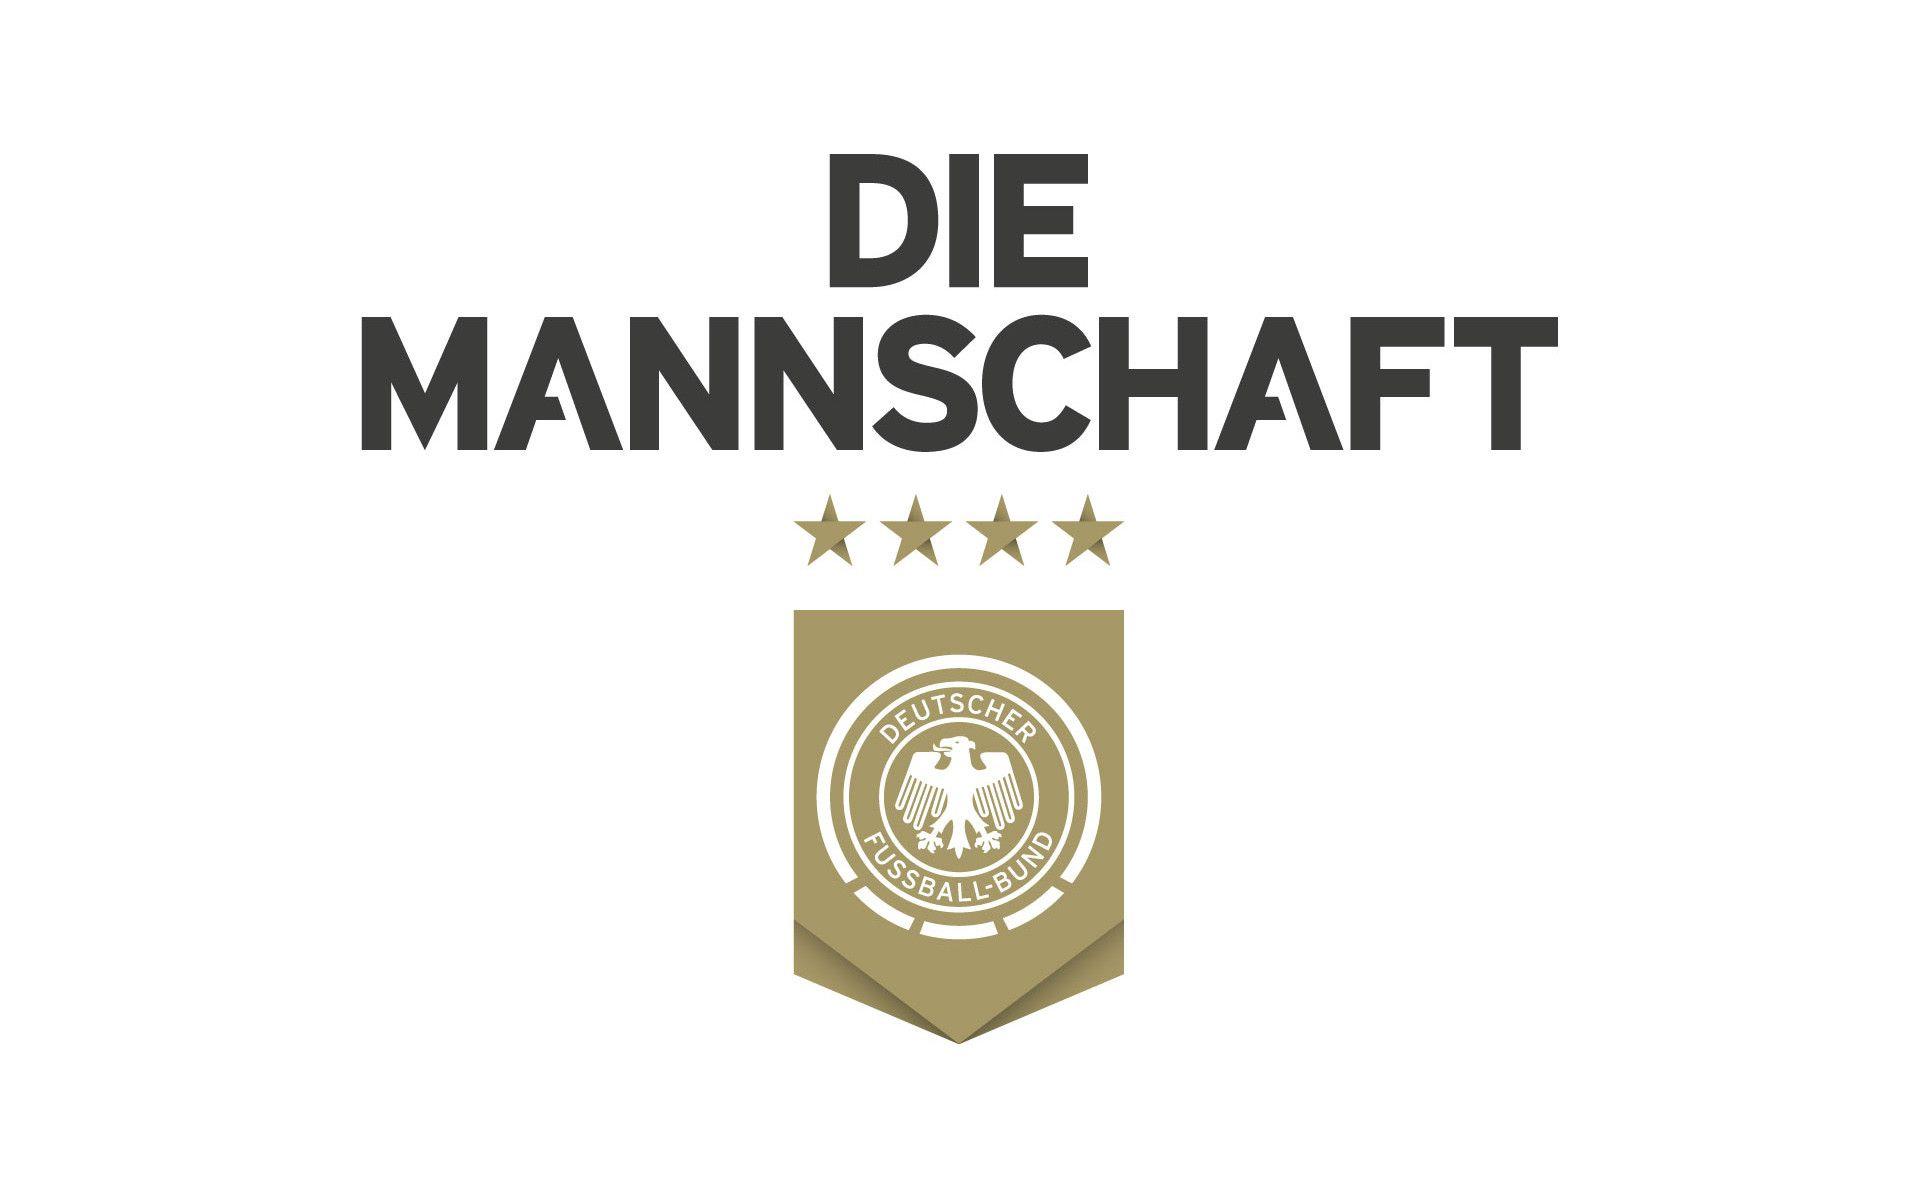 Die Mannschaft Germany Football Team HD Wallpaper